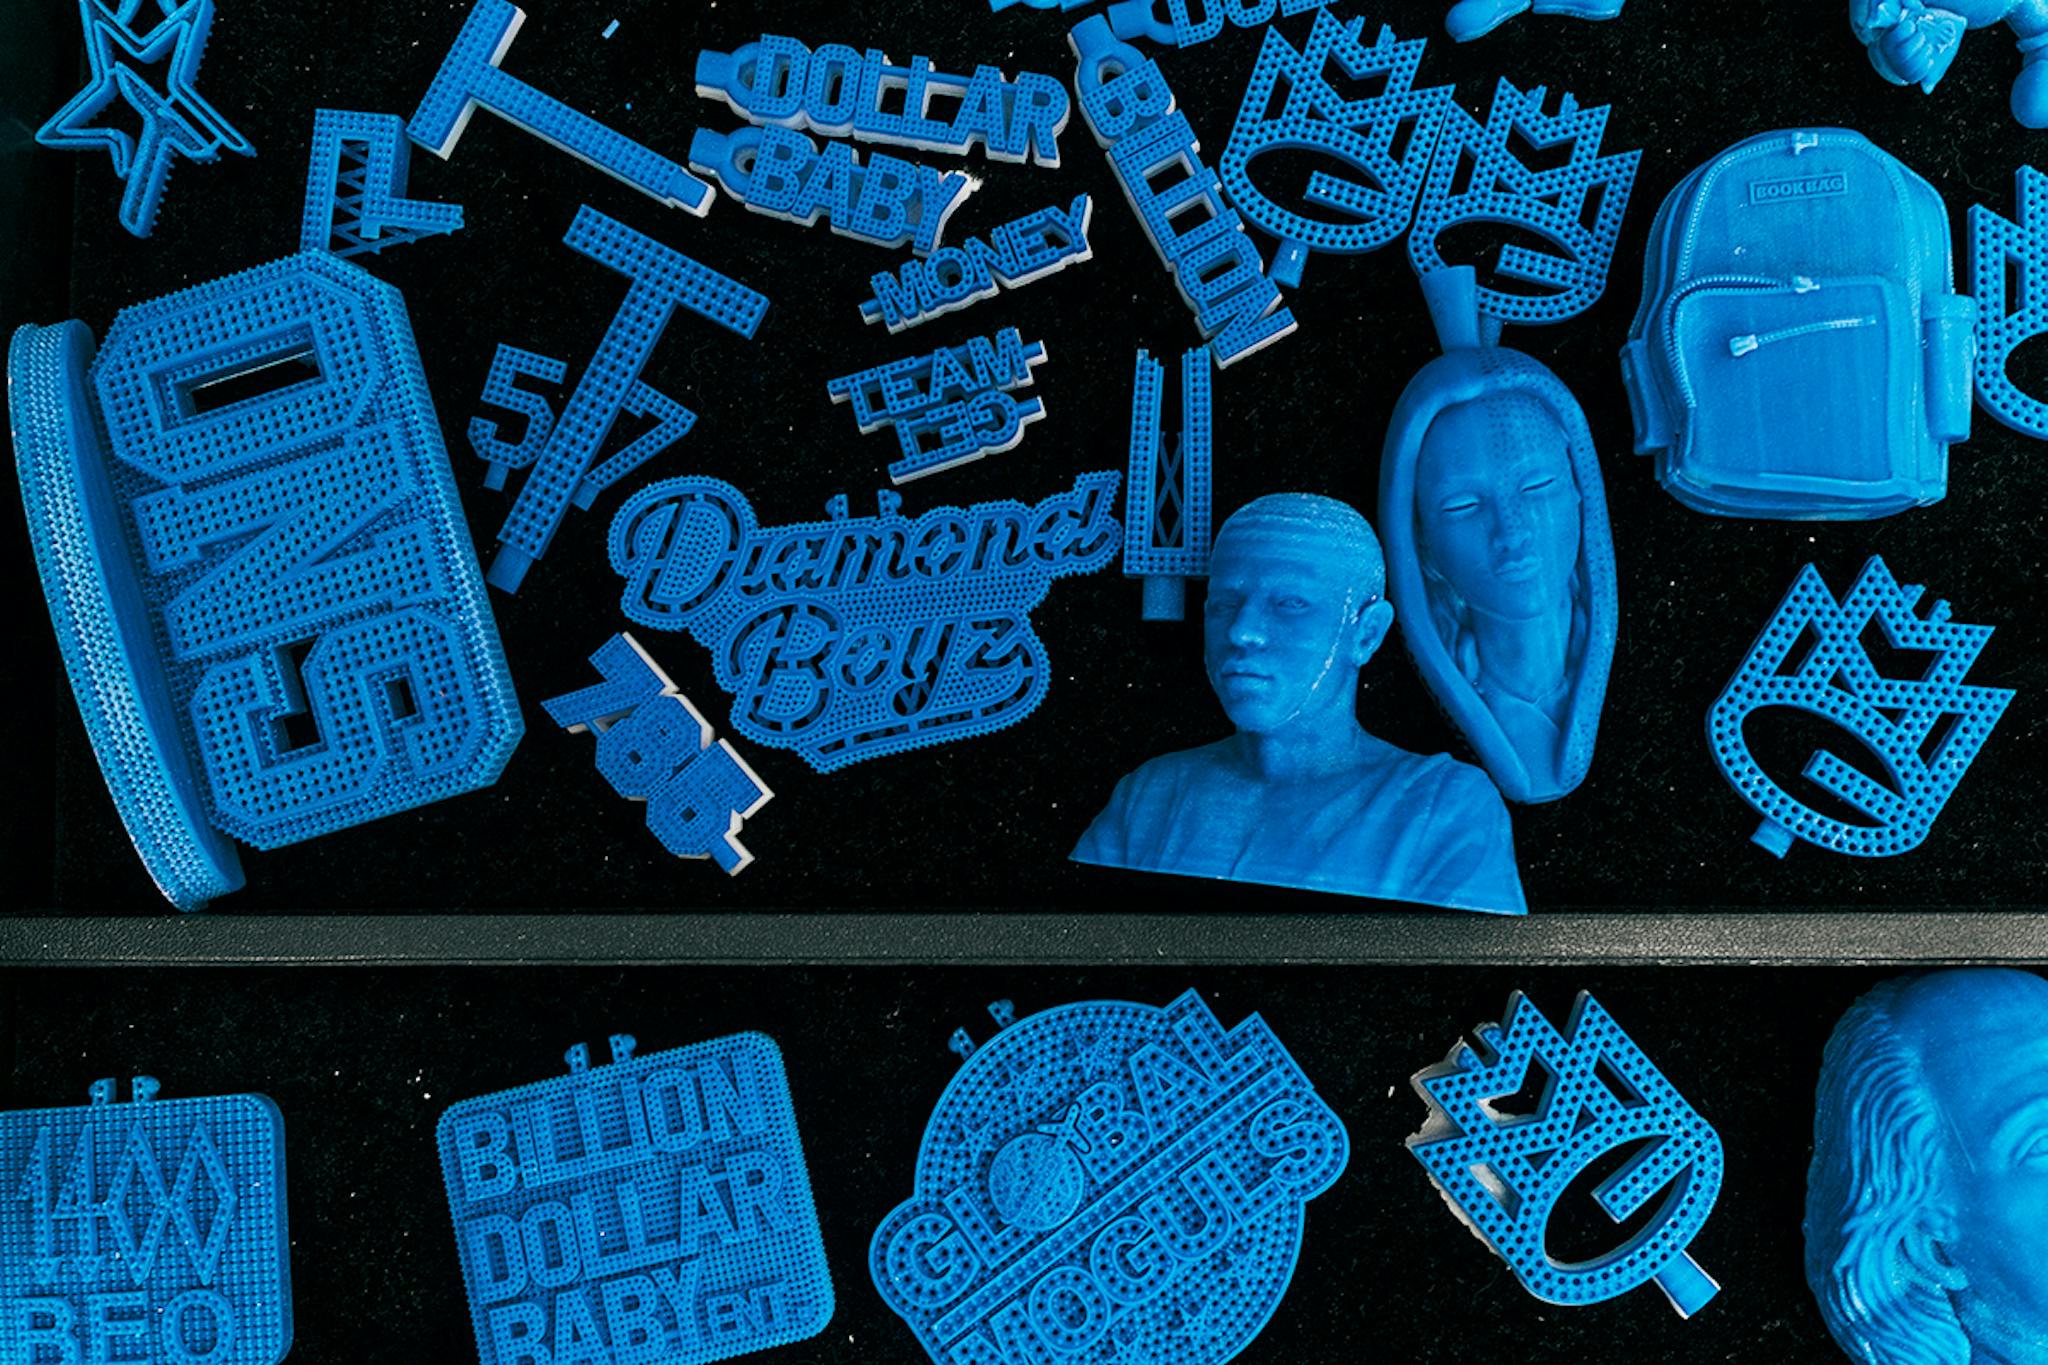 3D printed mock-up Johnny Dang designs.